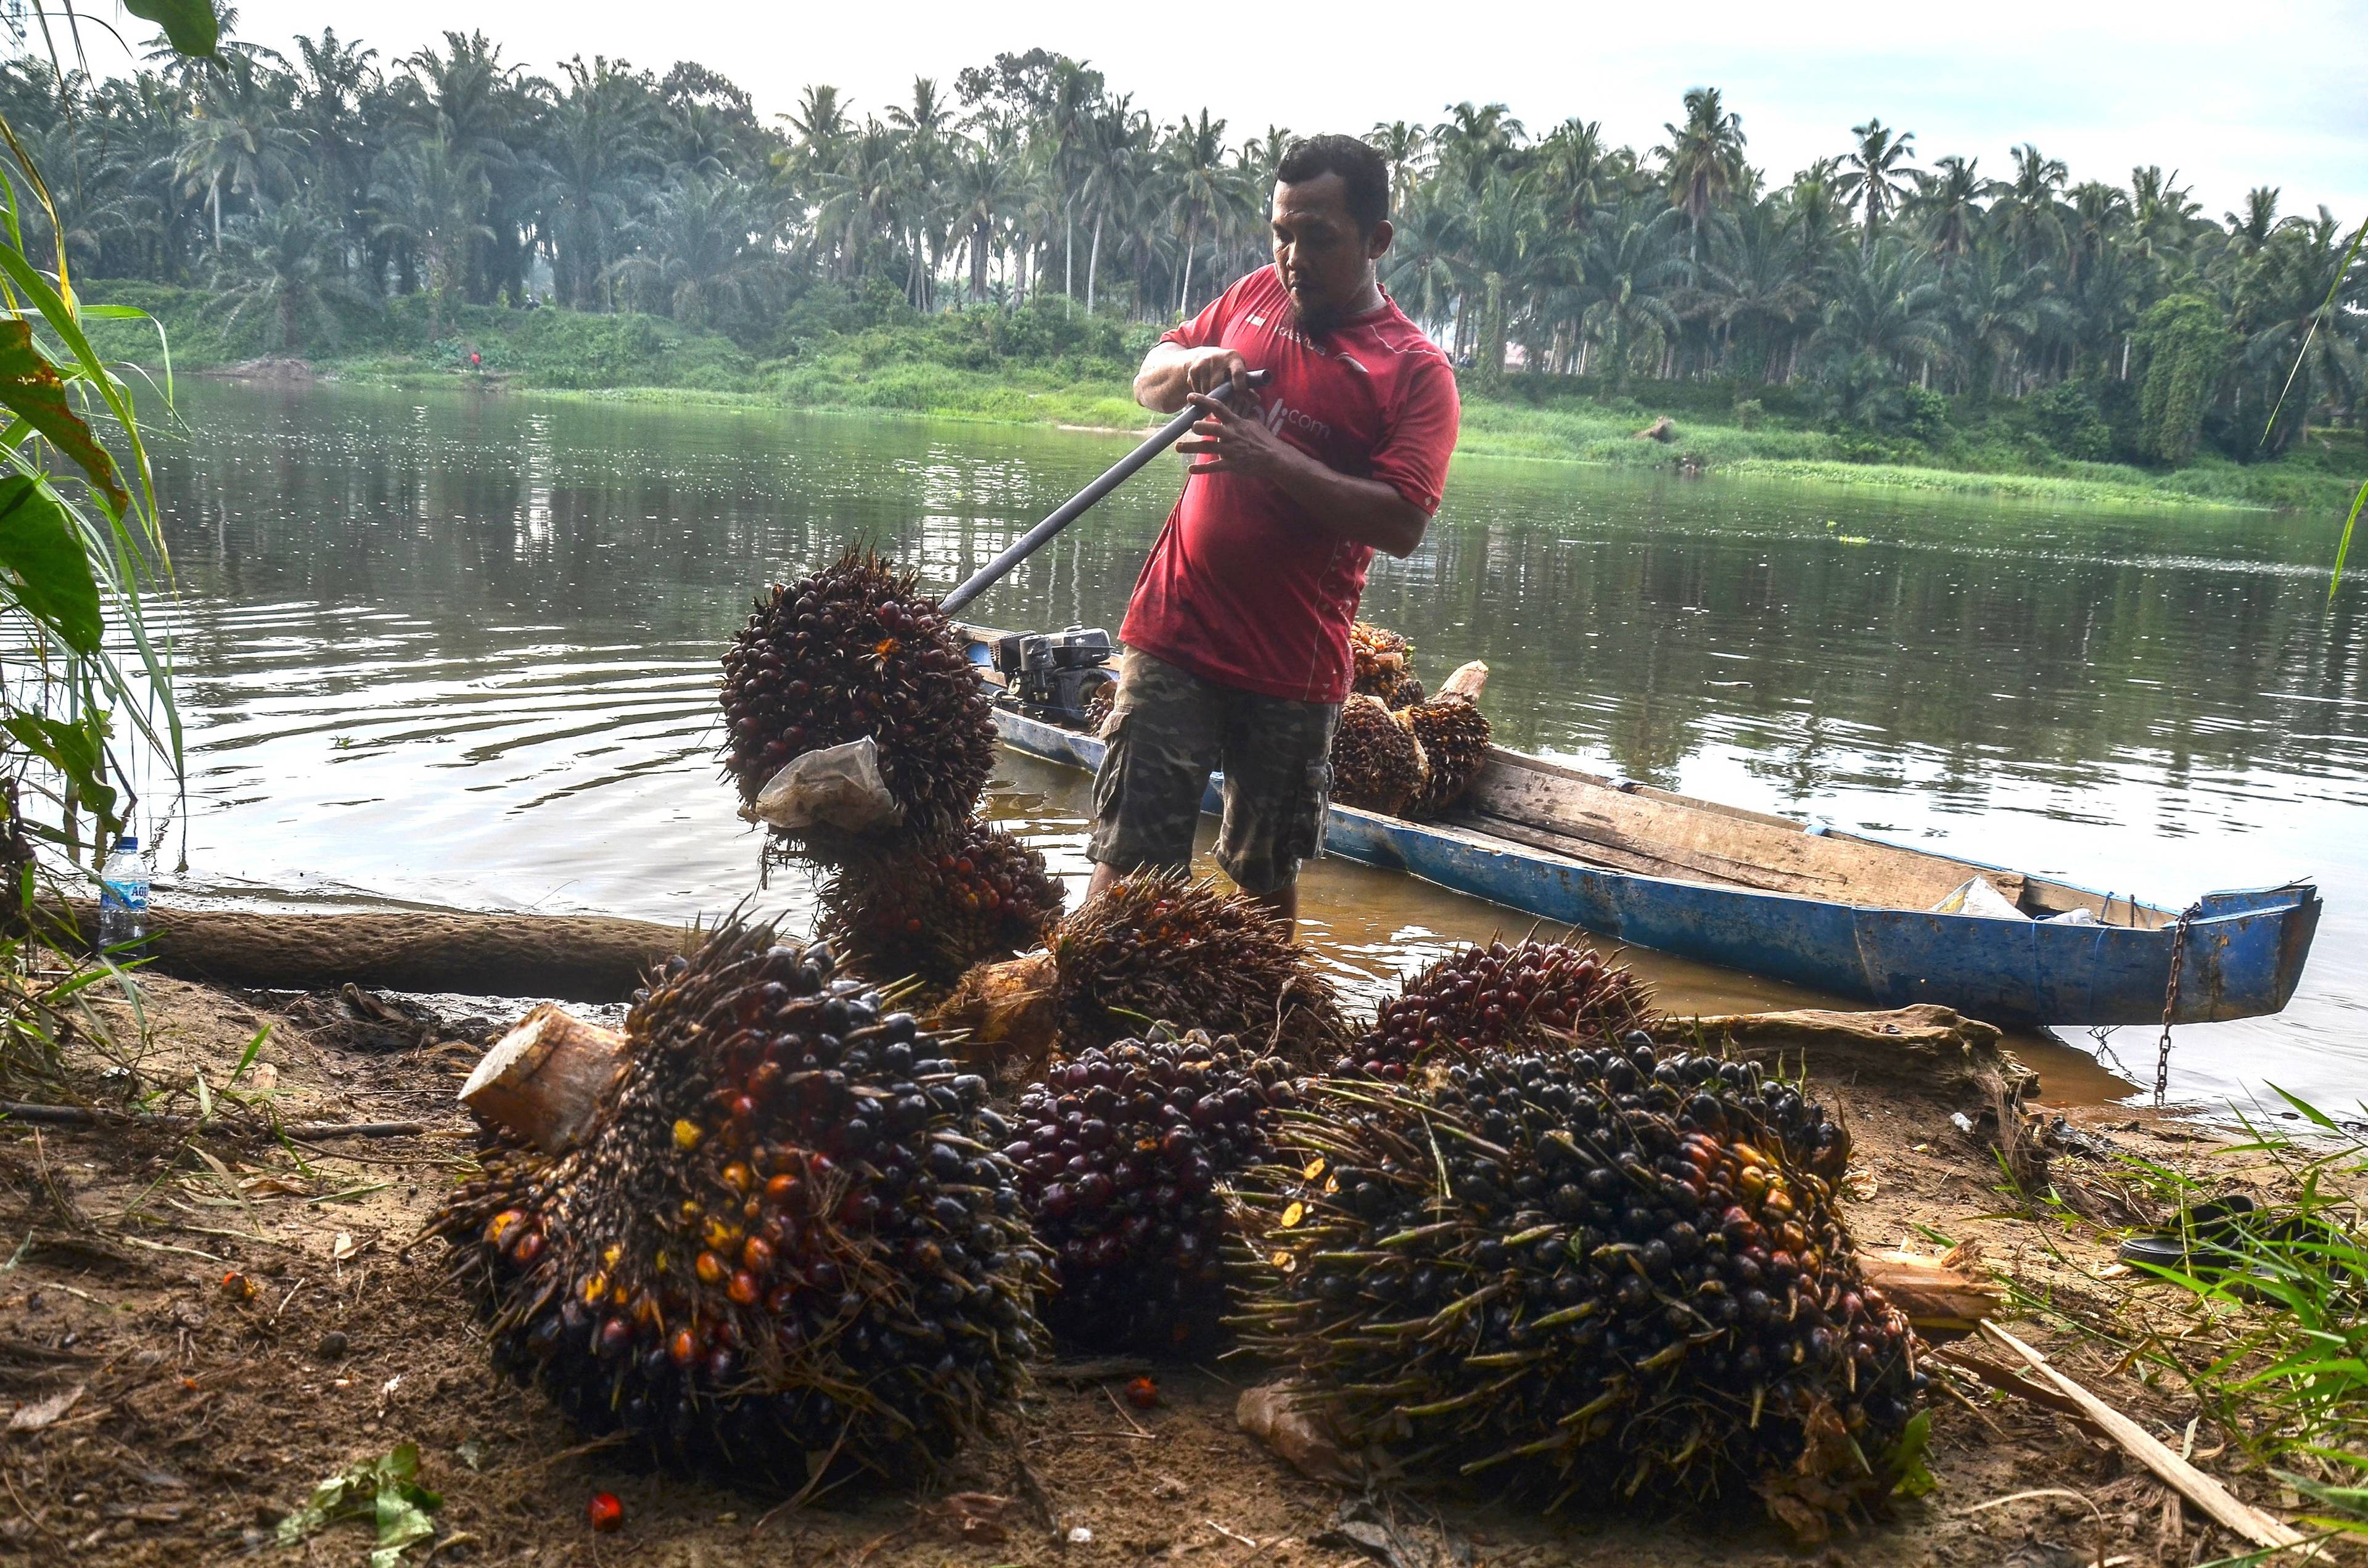 Meżczyzna wyładowuje z łodzi tropikalne owoce ojelowca - źródło oleju palmowego. W tle, za rzeką, las tropikalny